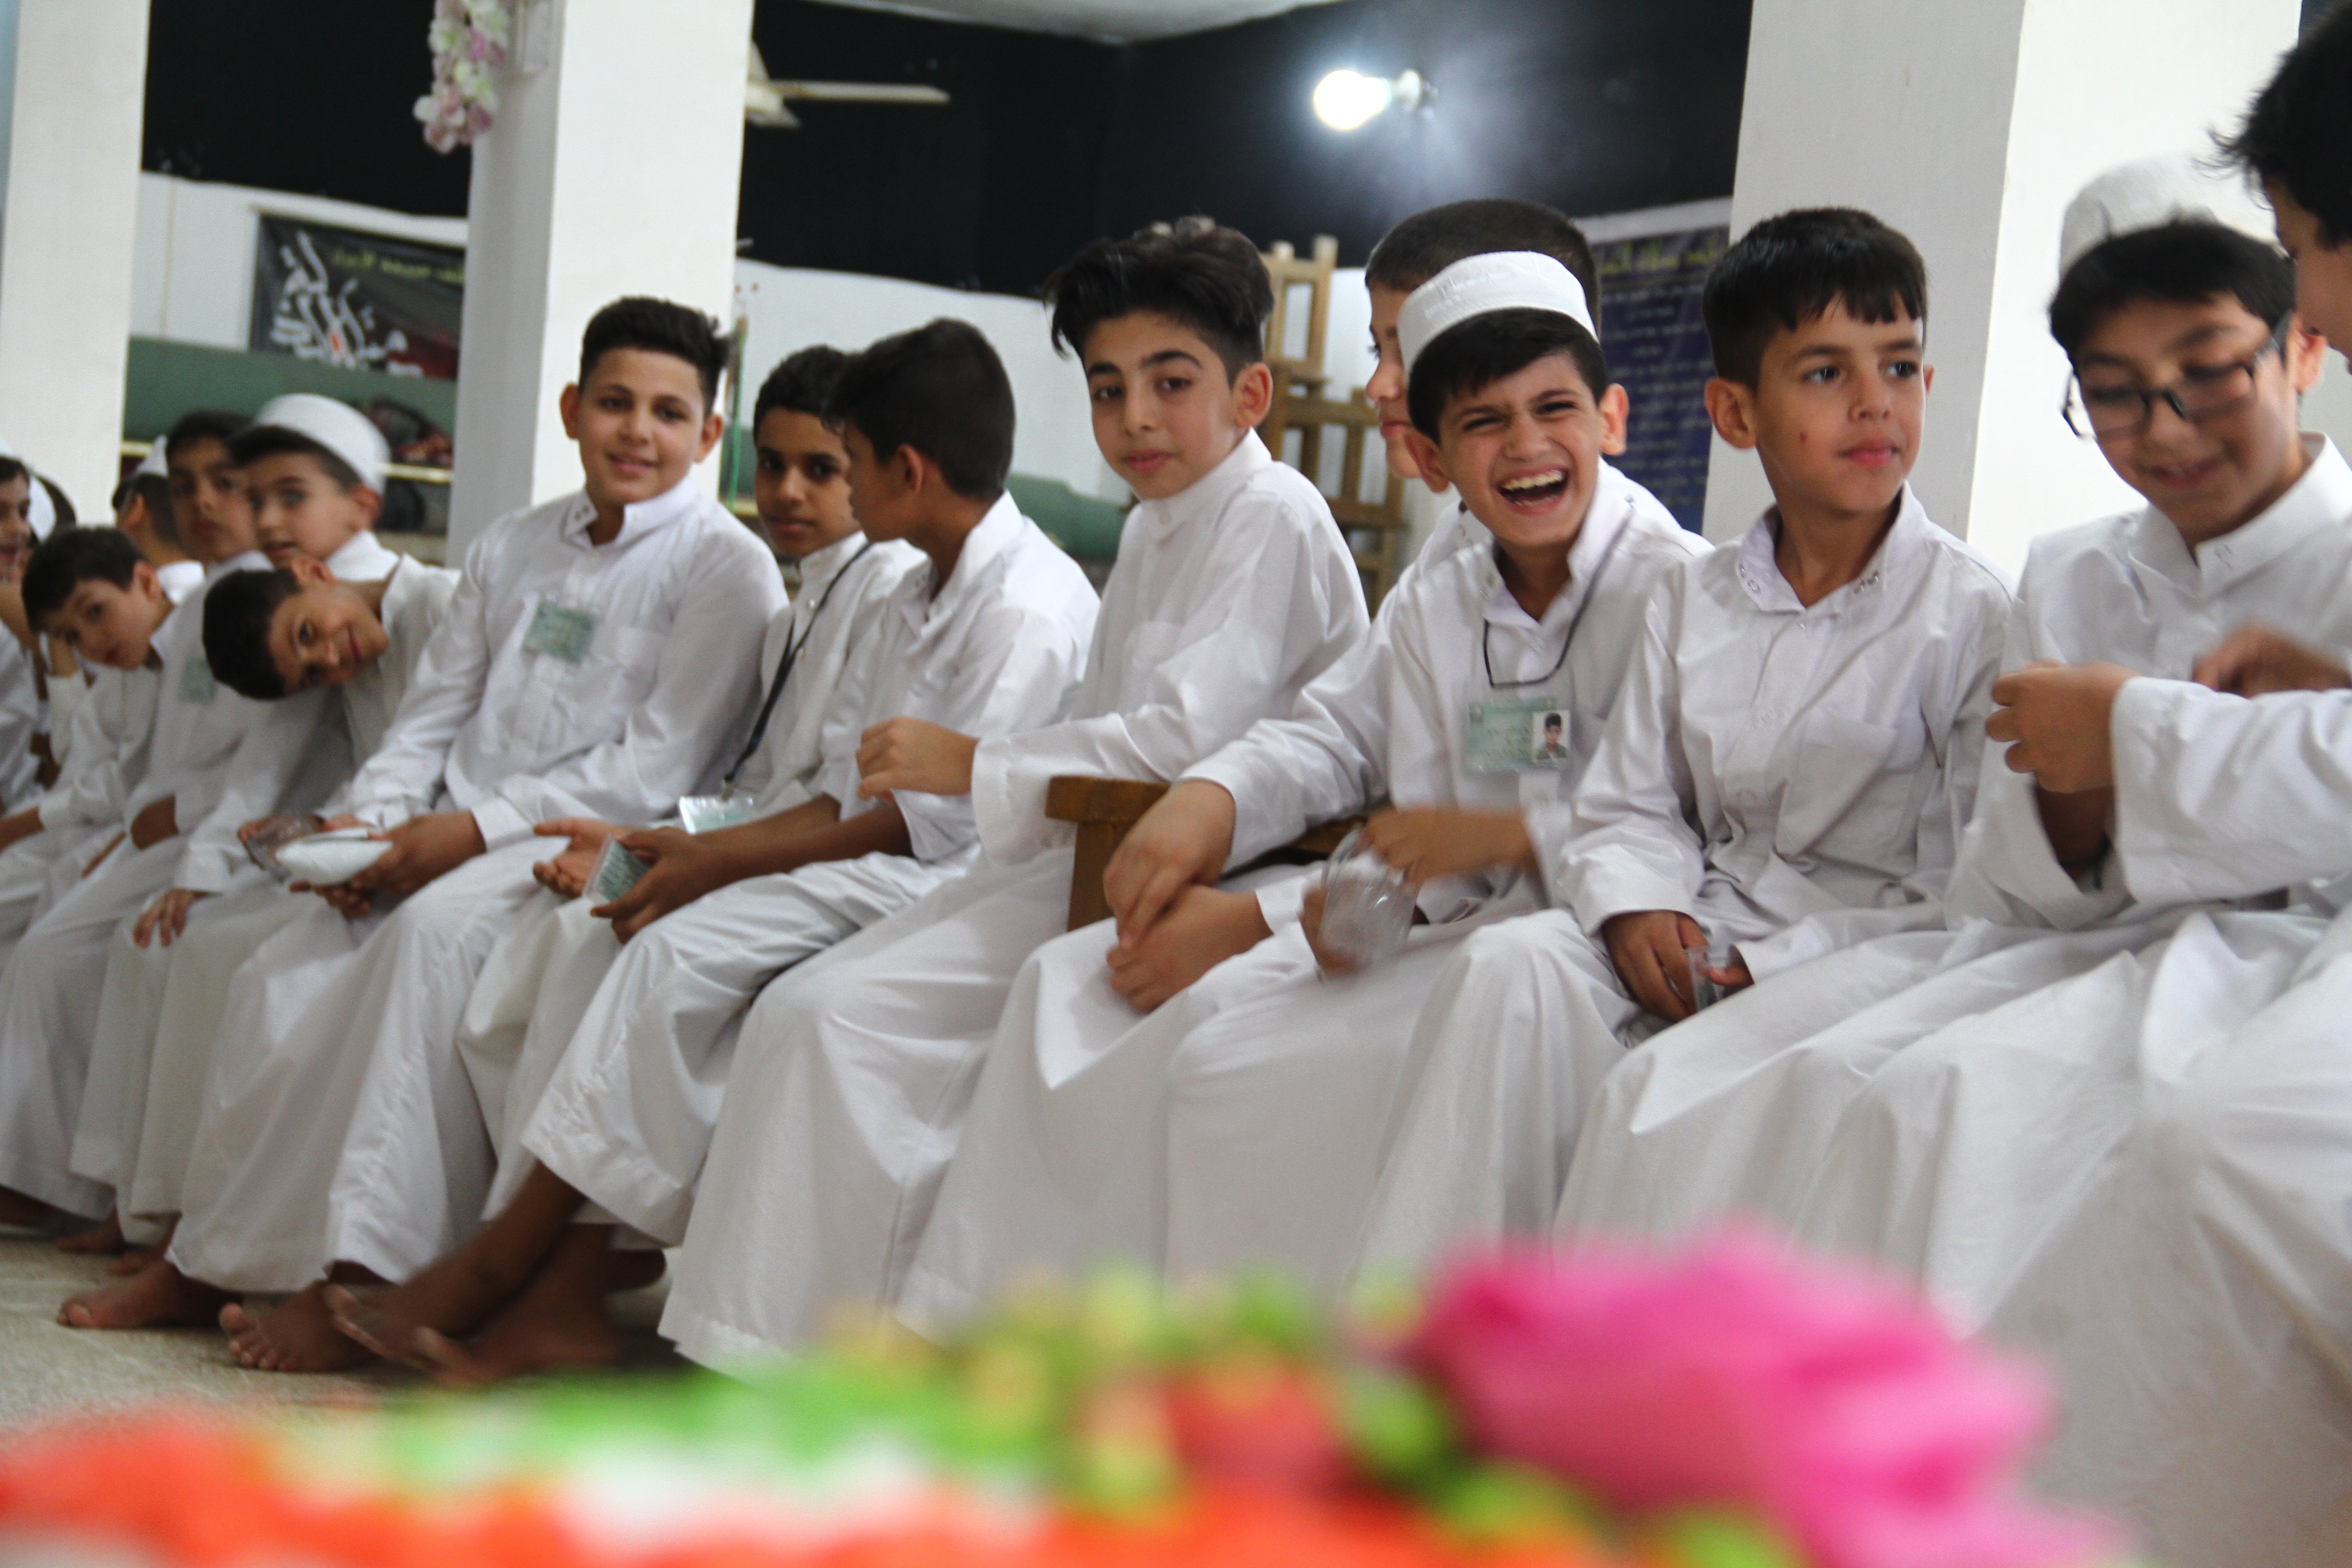 أكثر من (100) طالب يشاركون في حفل ختام الدورات الصيفية في مسجد أم البنين (ع) التي يقيمها معهد القرآن الكريم